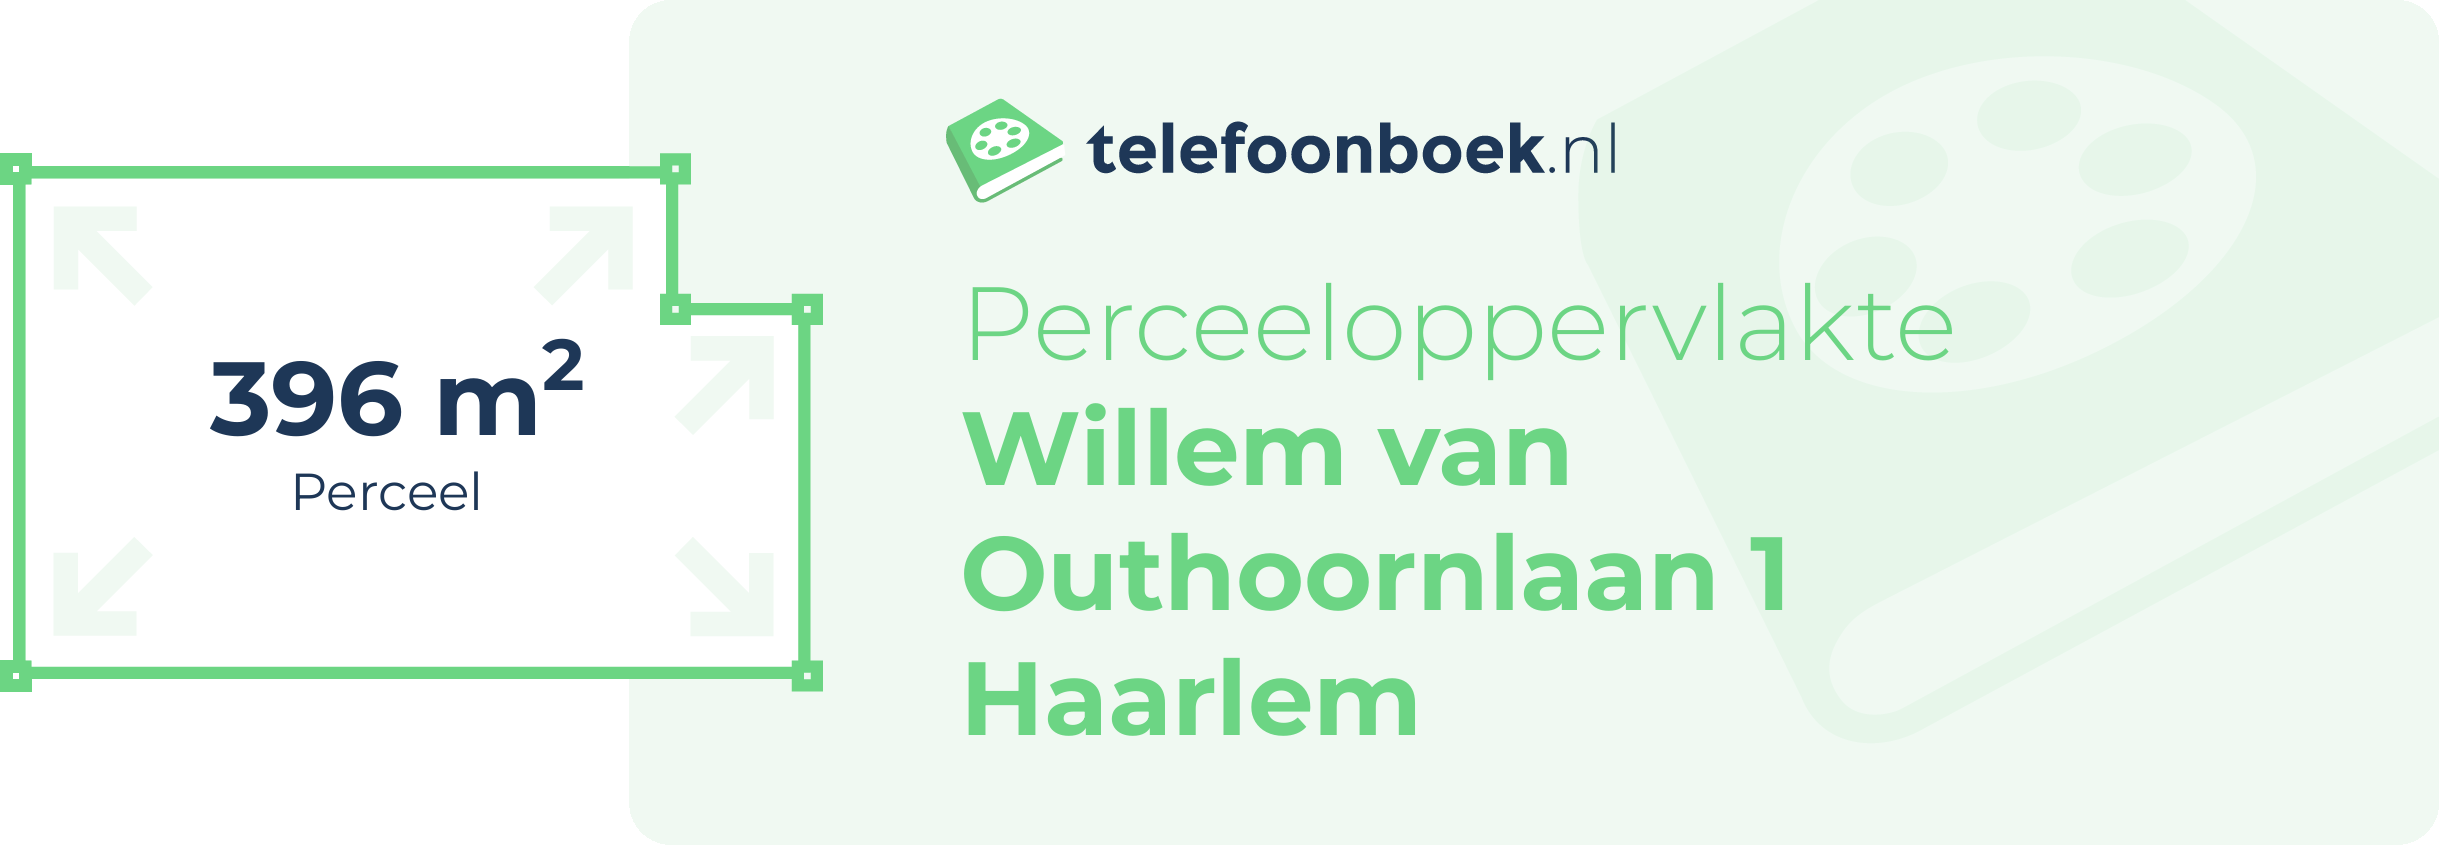 Perceeloppervlakte Willem Van Outhoornlaan 1 Haarlem